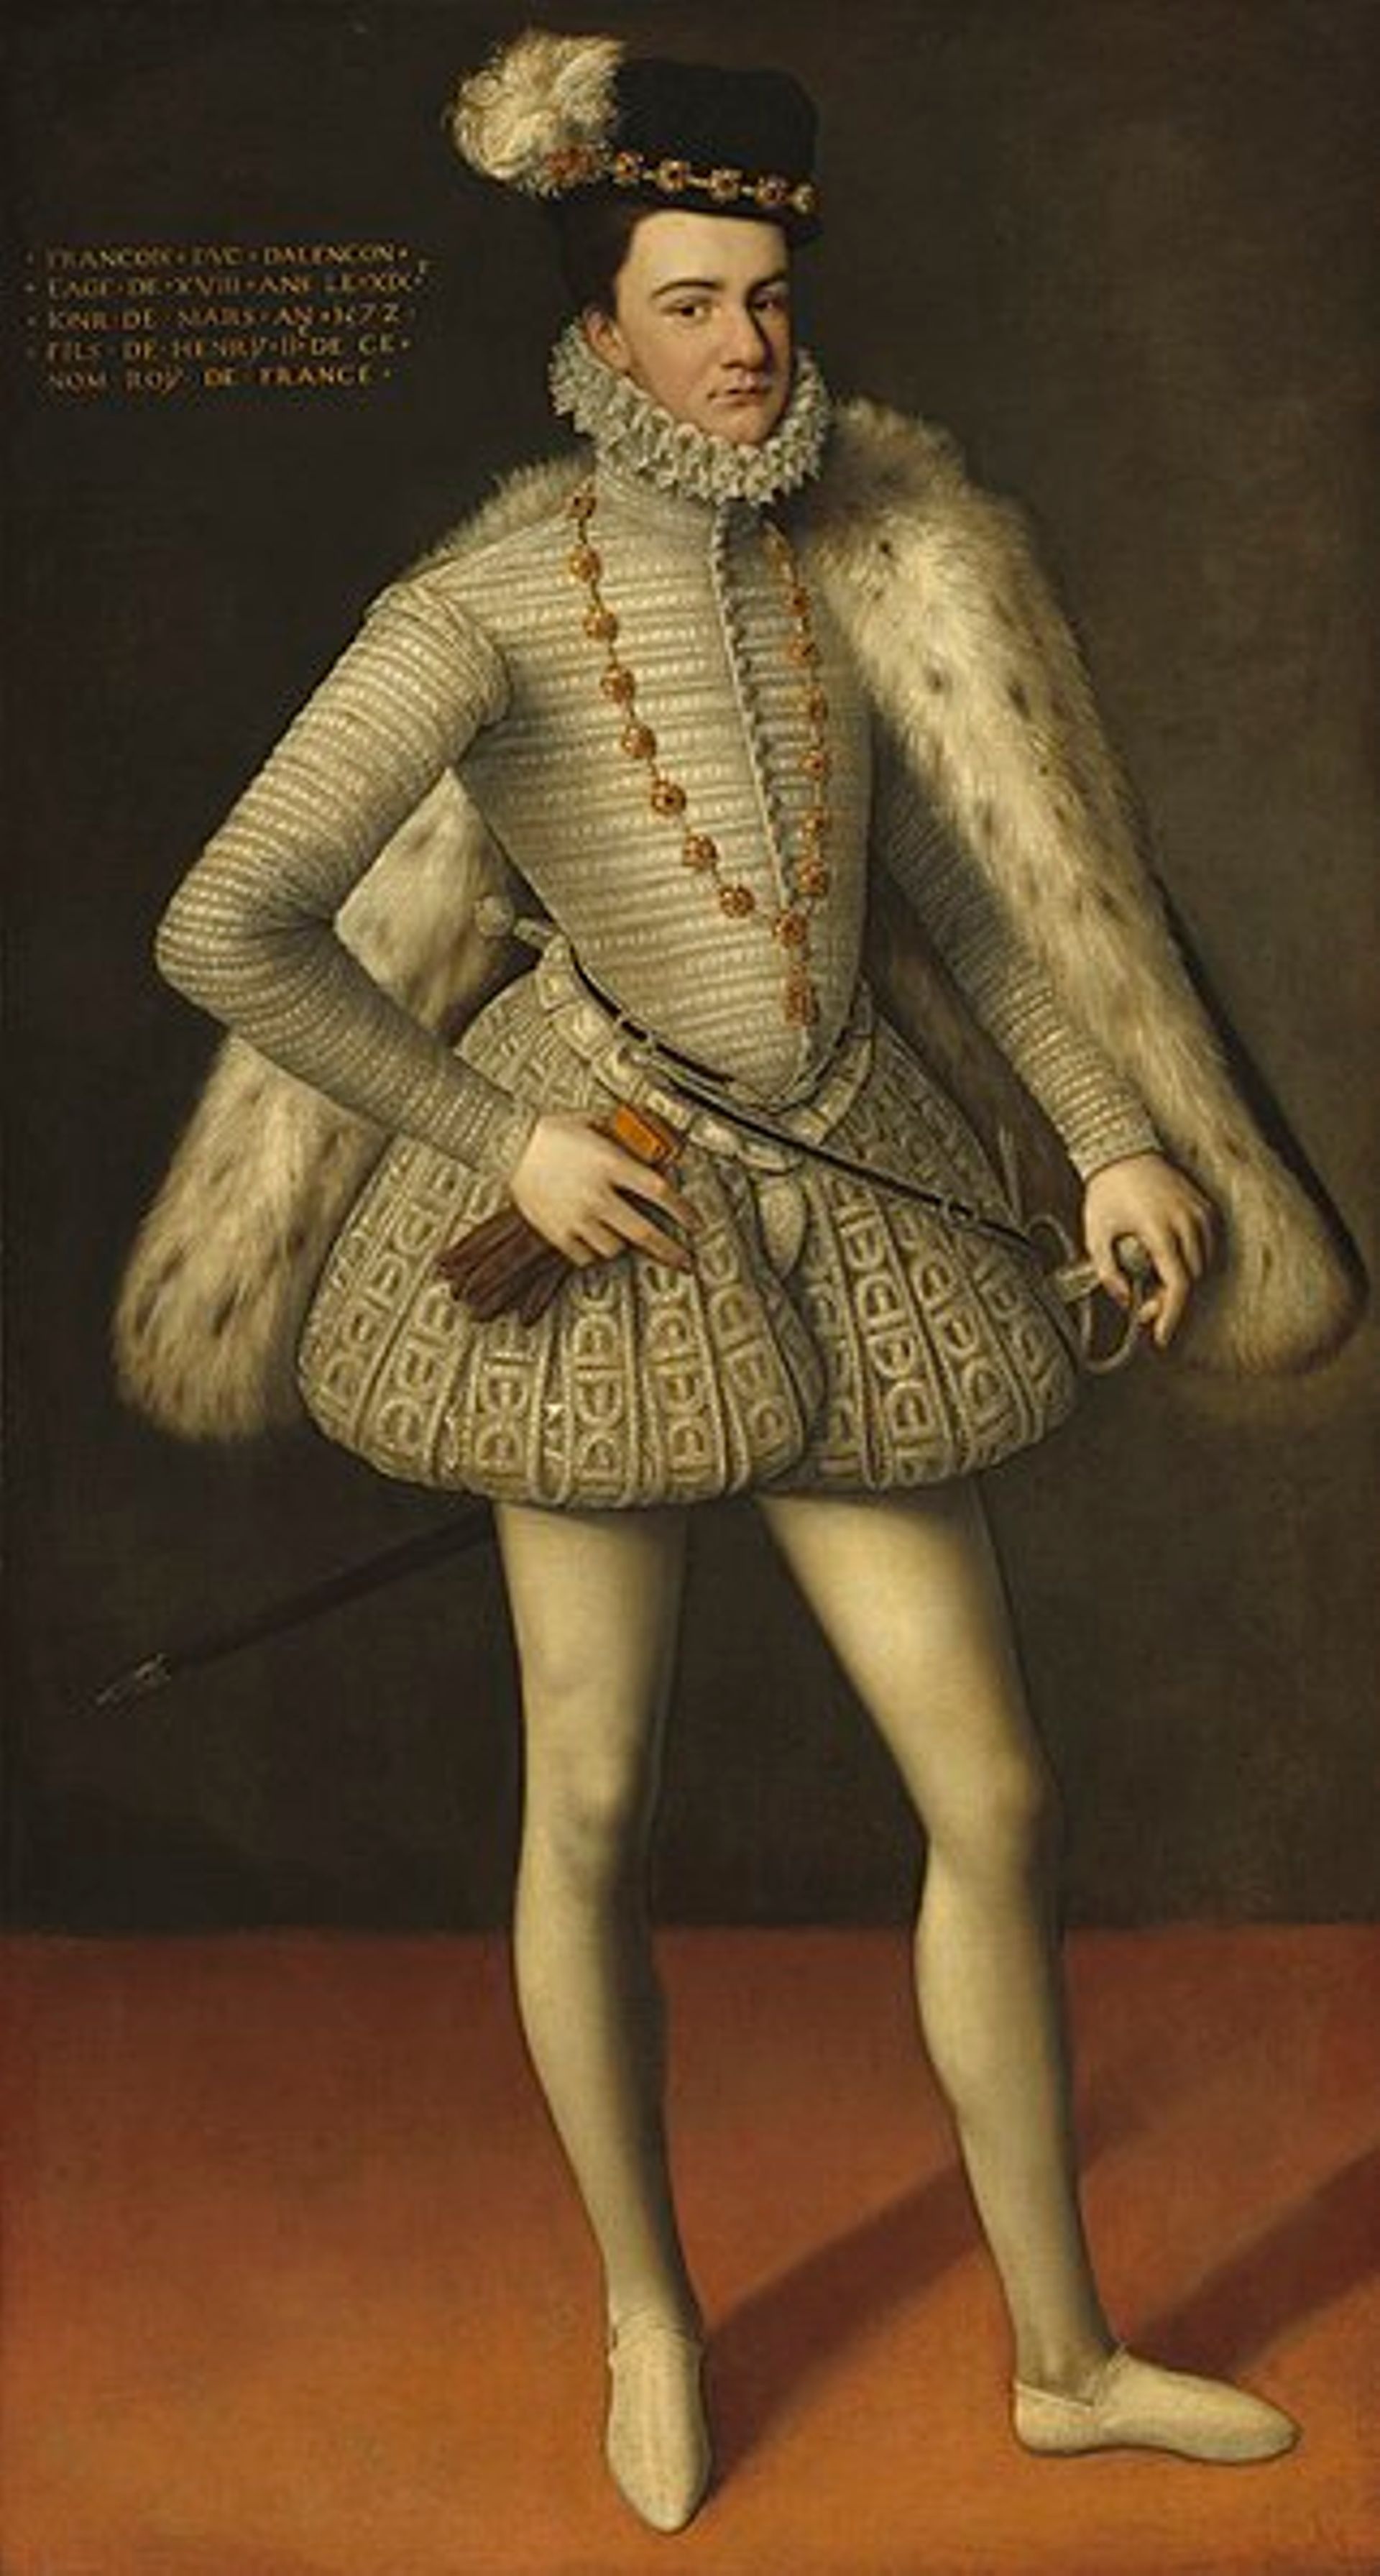 François, duc d’Anjou. National Gallery of Art, Washington DC. Tous droits réservés.